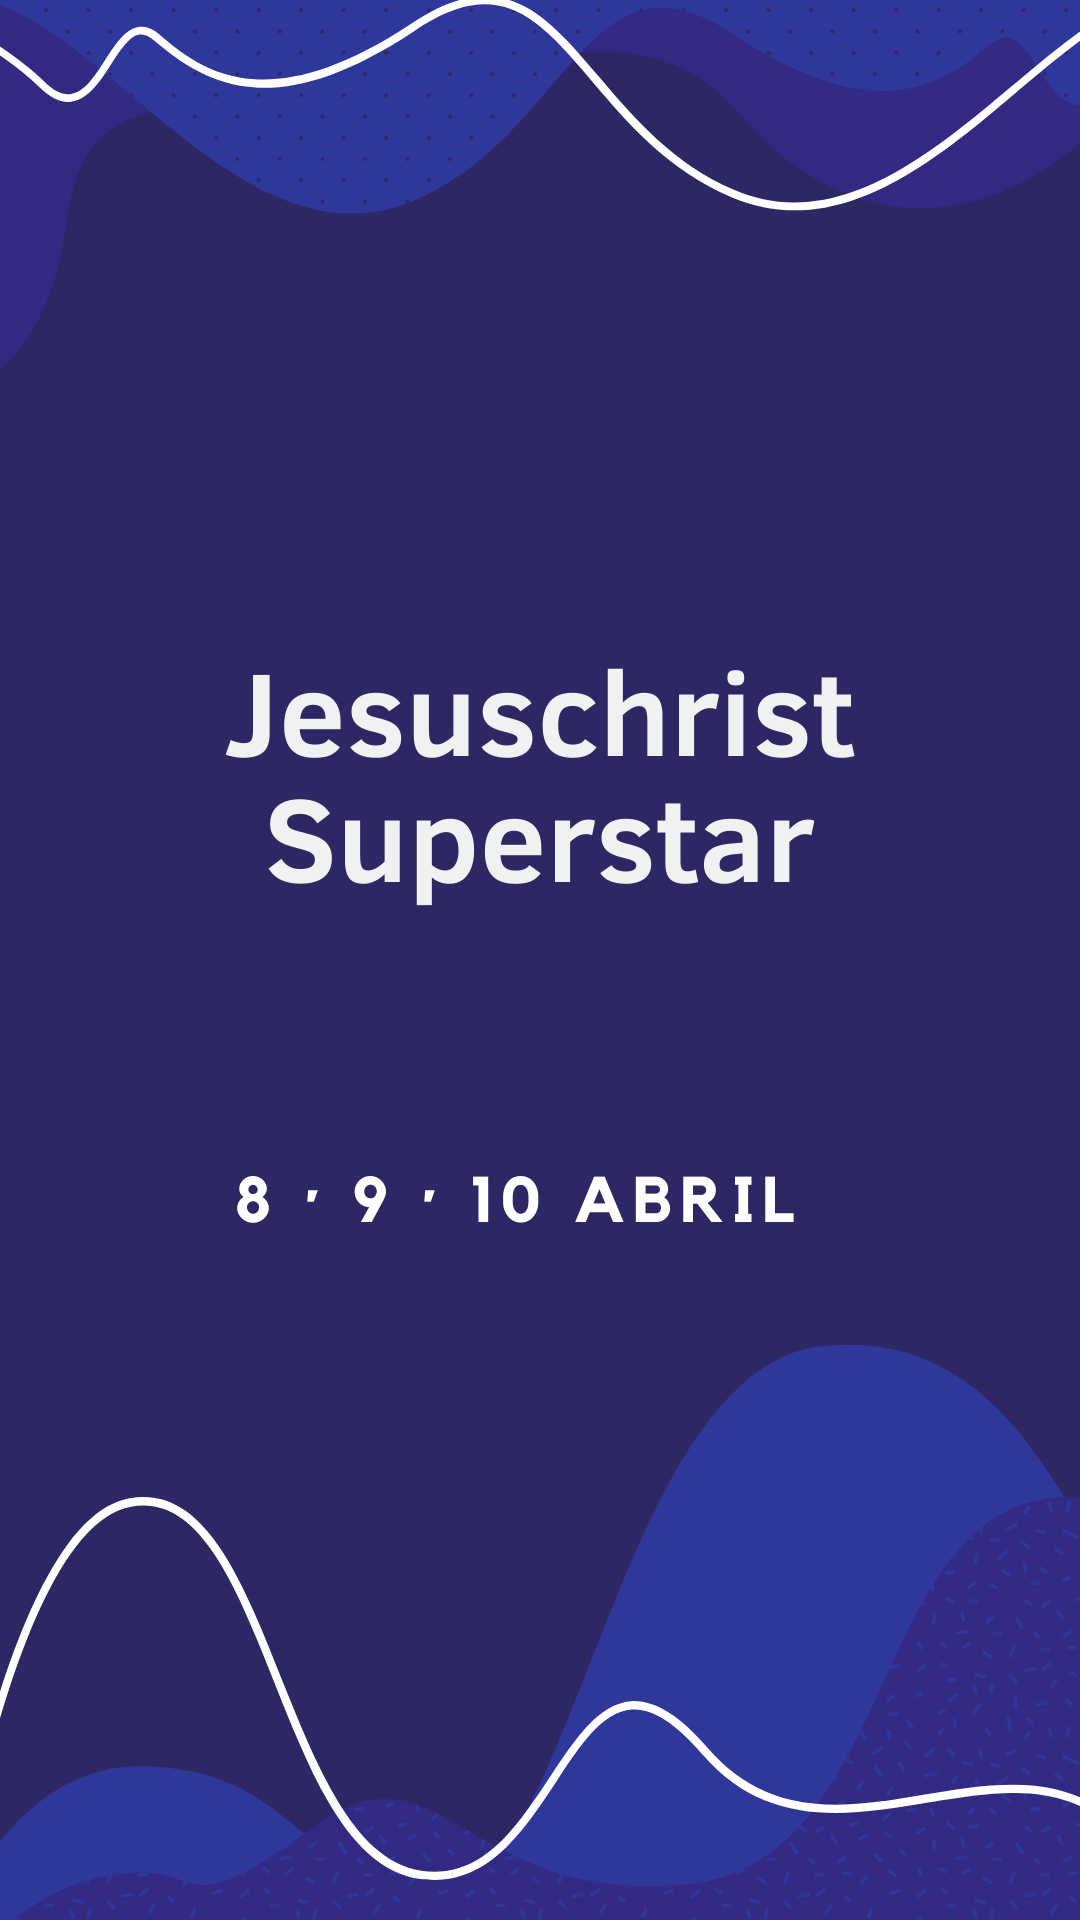 Jesus Chirst Superstar